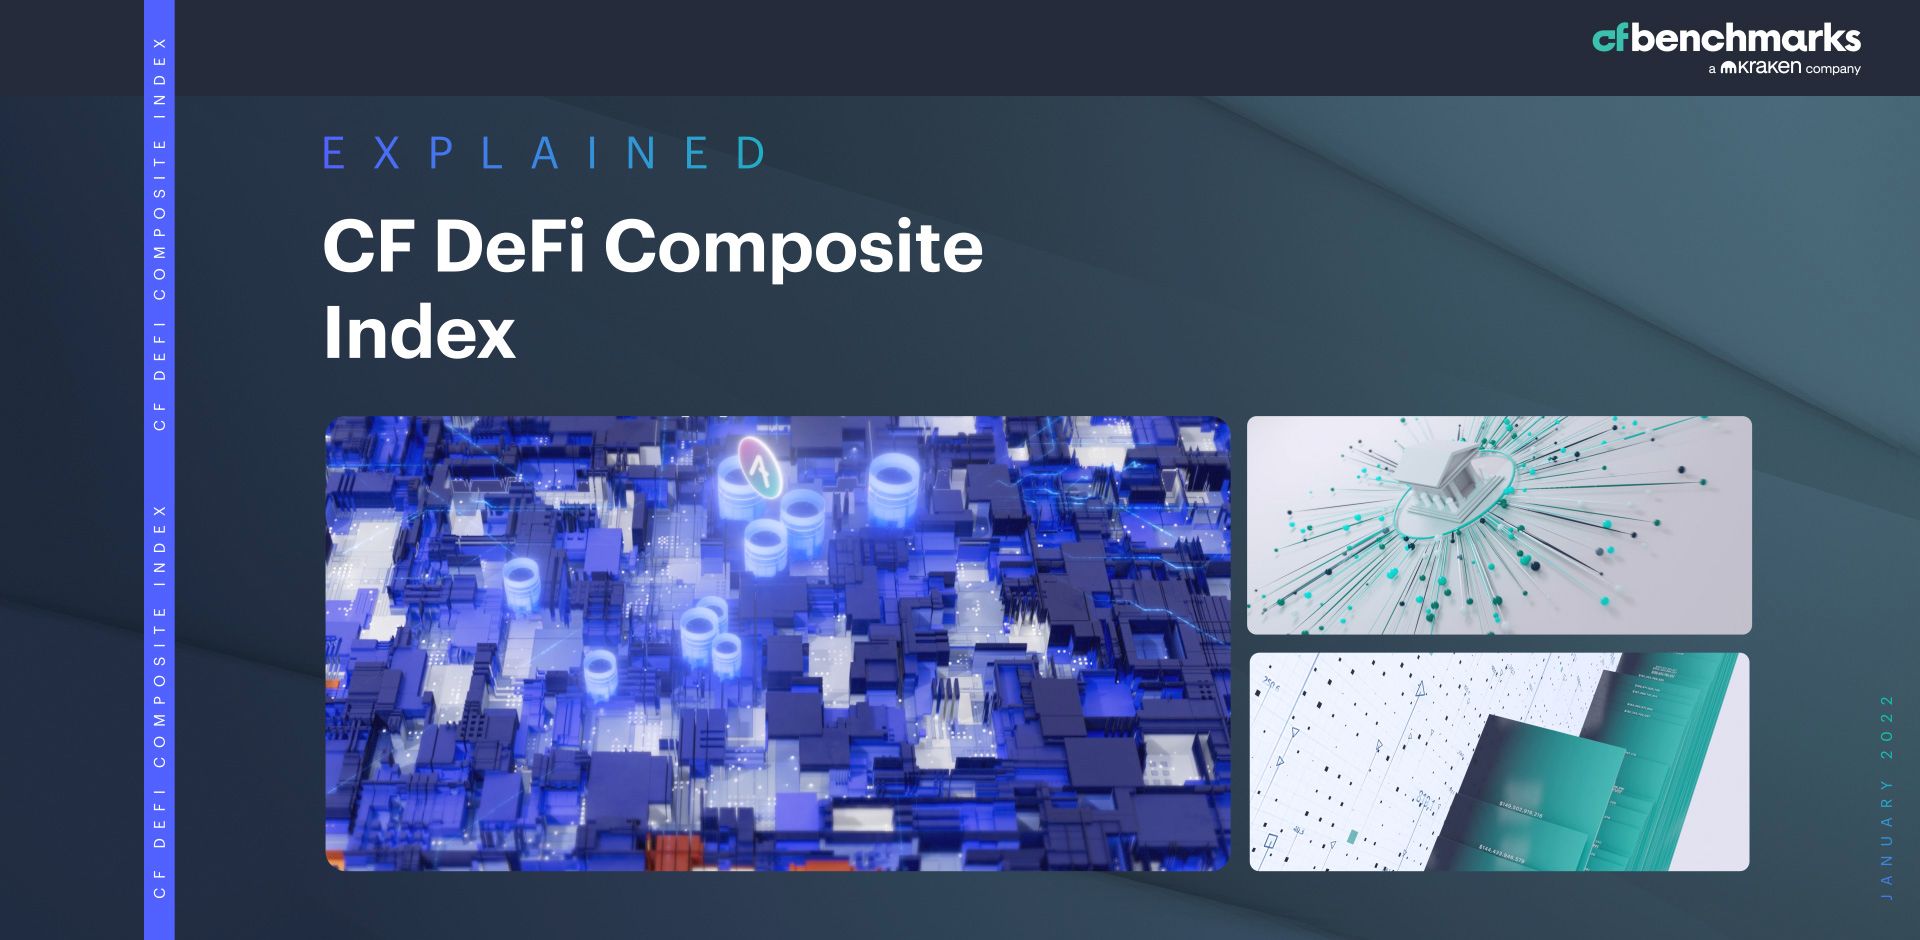 CF DeFi Composite Index